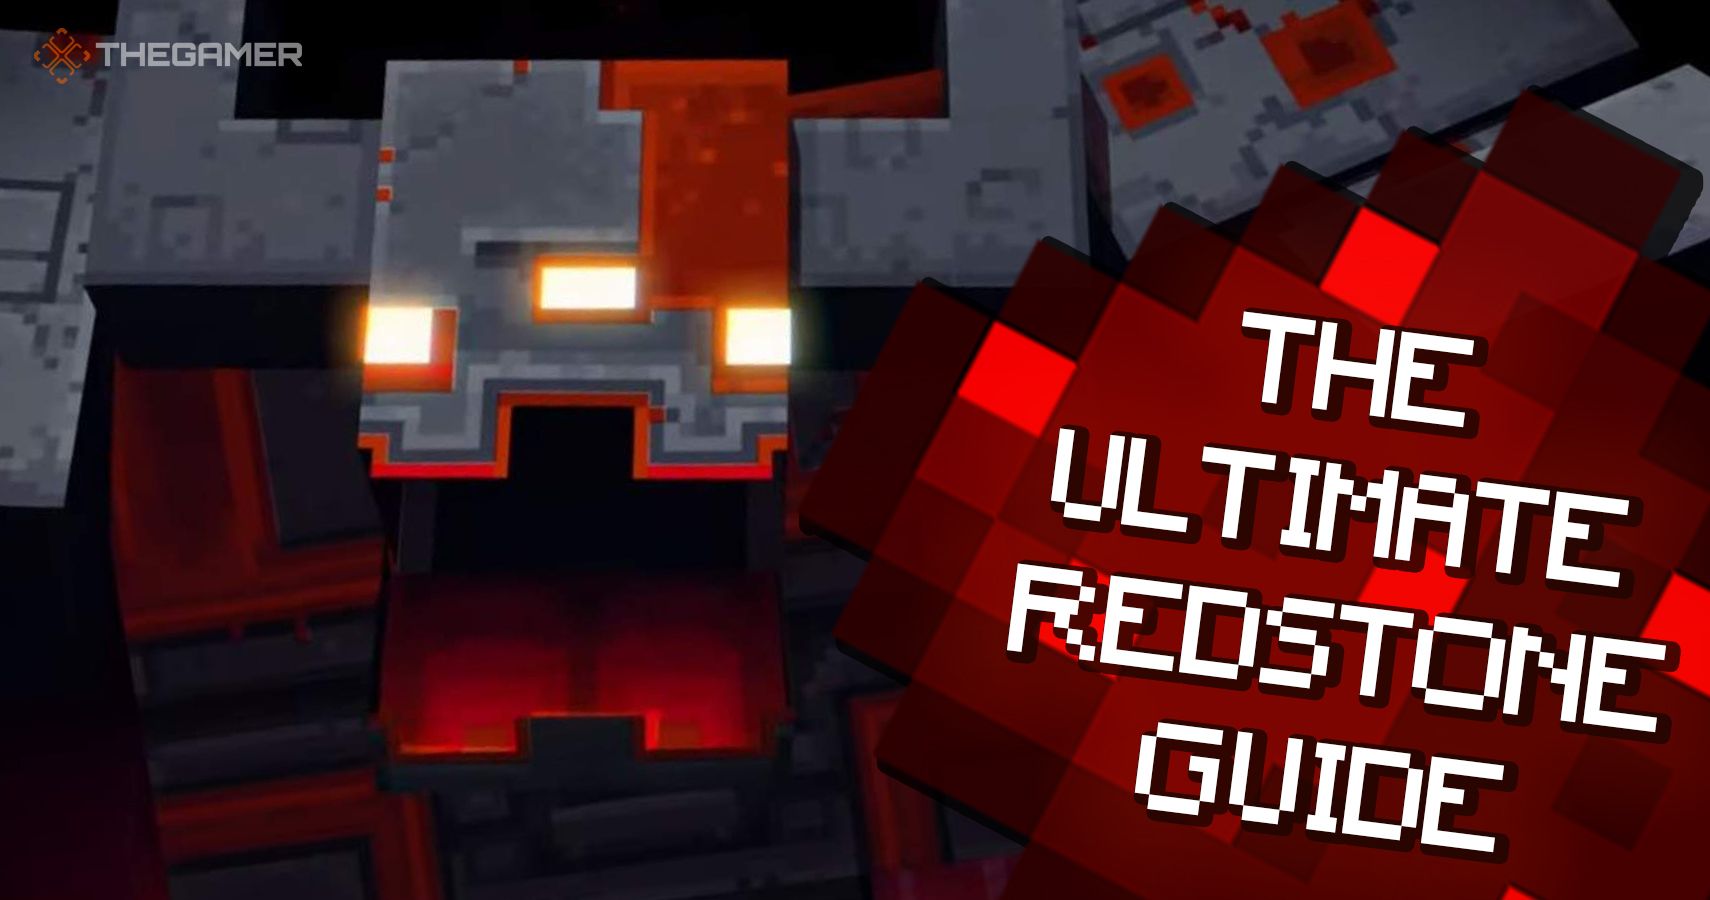 Minecraft redstone guide